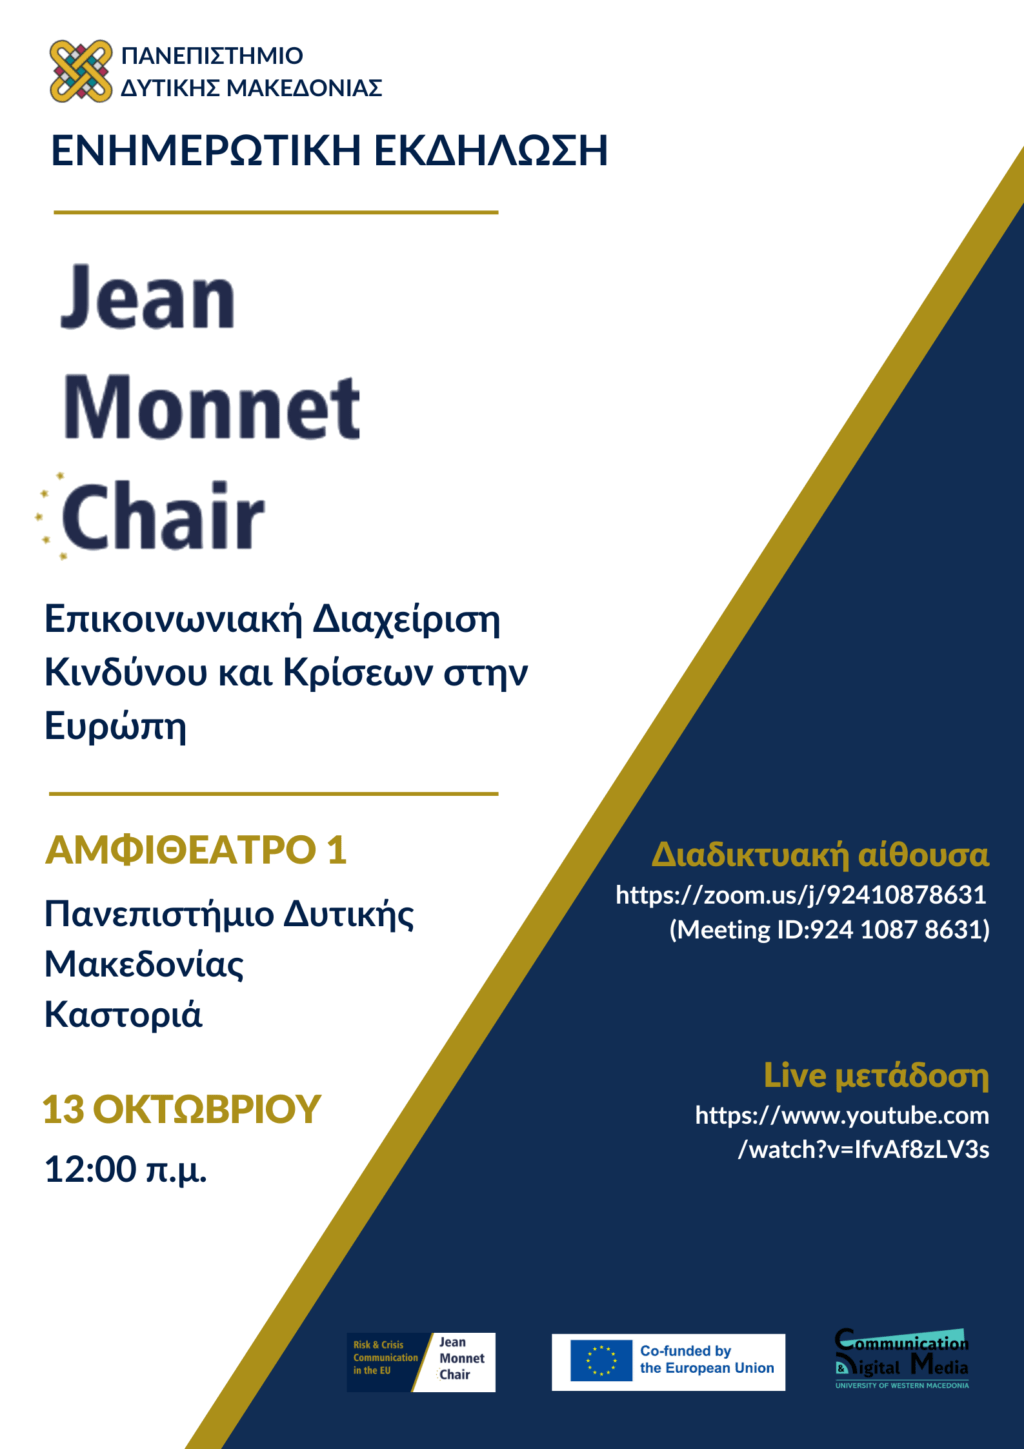 Πανεπιστήμιο Δυτικής Μακεδονίας | Jean Monnet Chair στην Επικοινωνιακή Διαχείριση Κινδύνου και Κρίσεων στην Ευρώπη | Ενημερωτική Εκδήλωση.